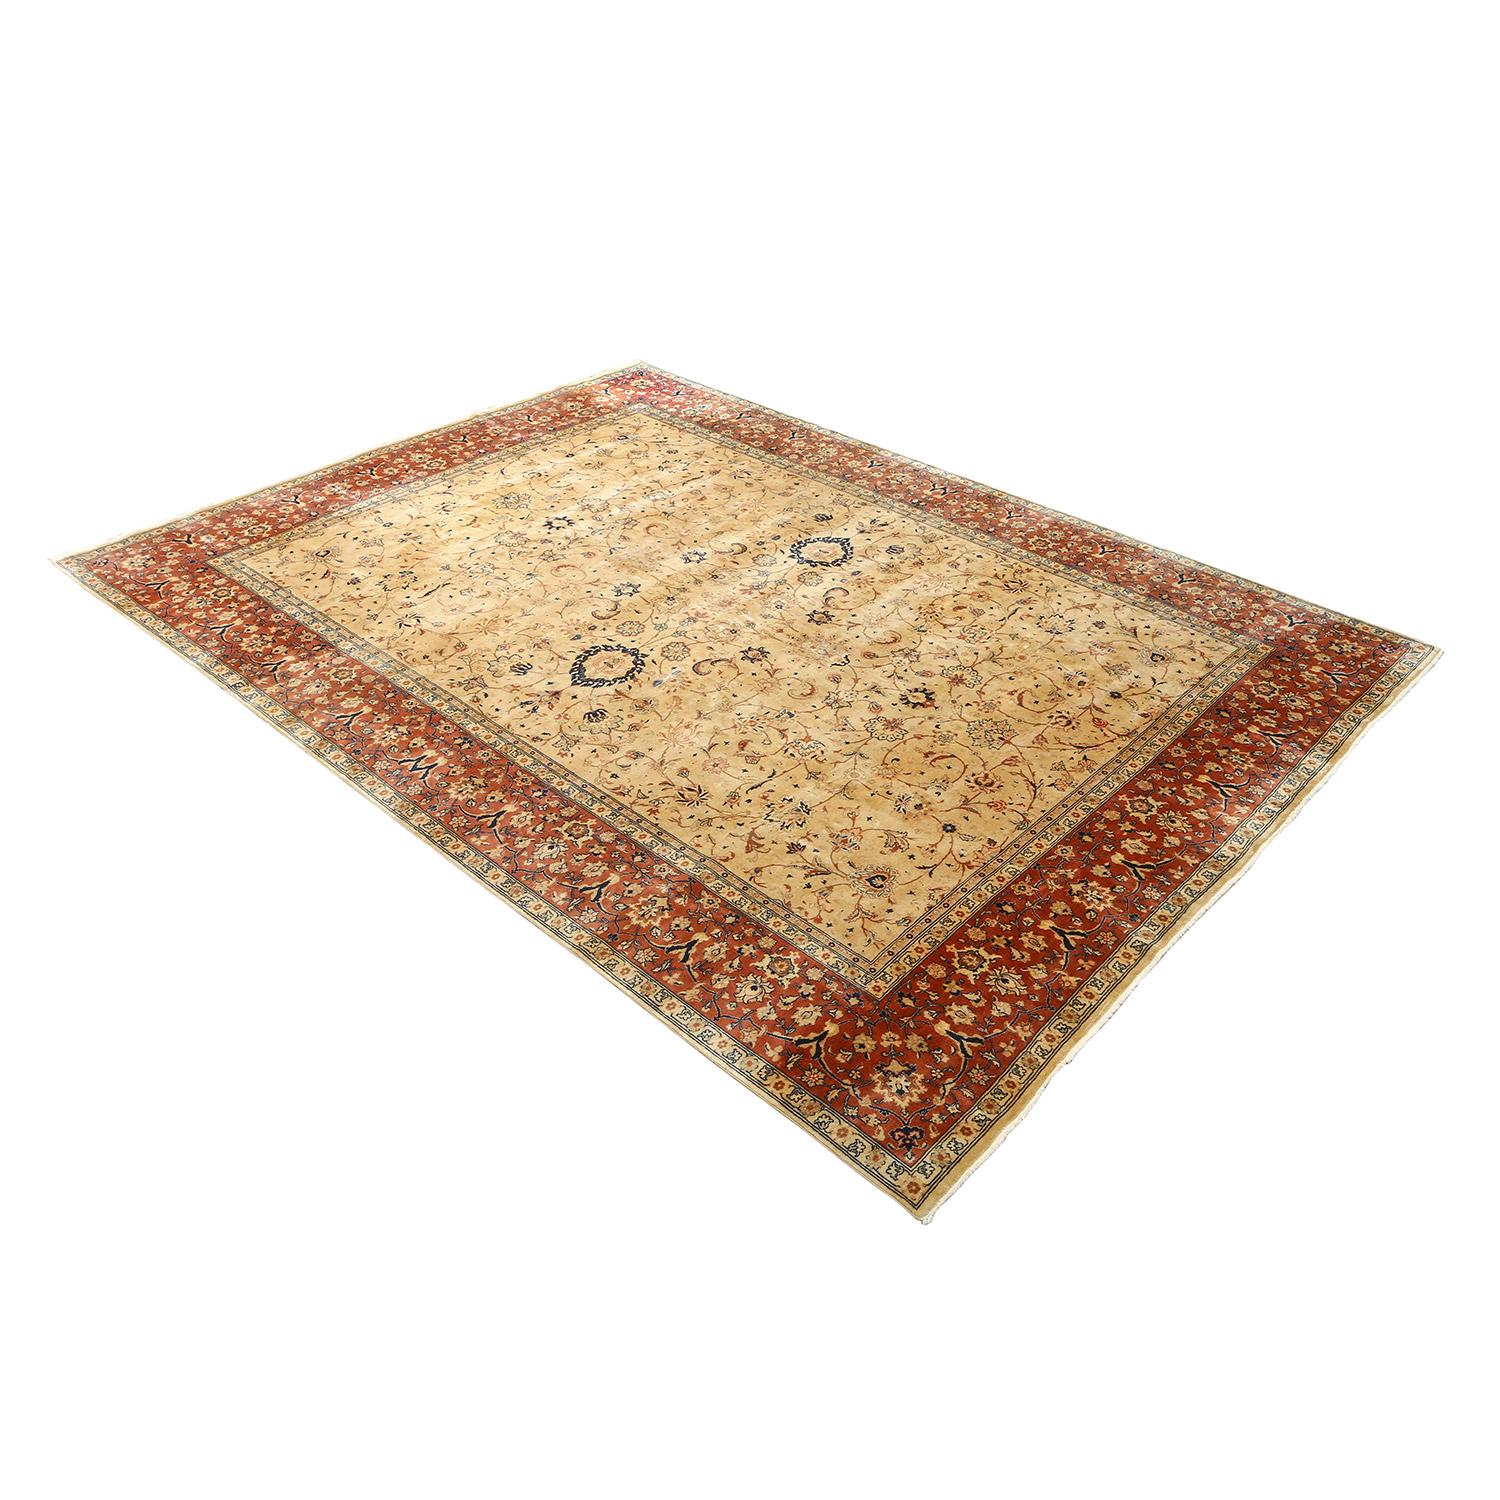 
Dieser Vintage-Teppich von Tabriz Emad, dessen Geschichte etwa 70 Jahre zurückreicht, ist ein Zeugnis für die dauerhafte Schönheit der persischen Webtradition. Mit einem Grundgewebe aus Baumwolle und einem luxuriösen, weichen Wollflor verkörpert er